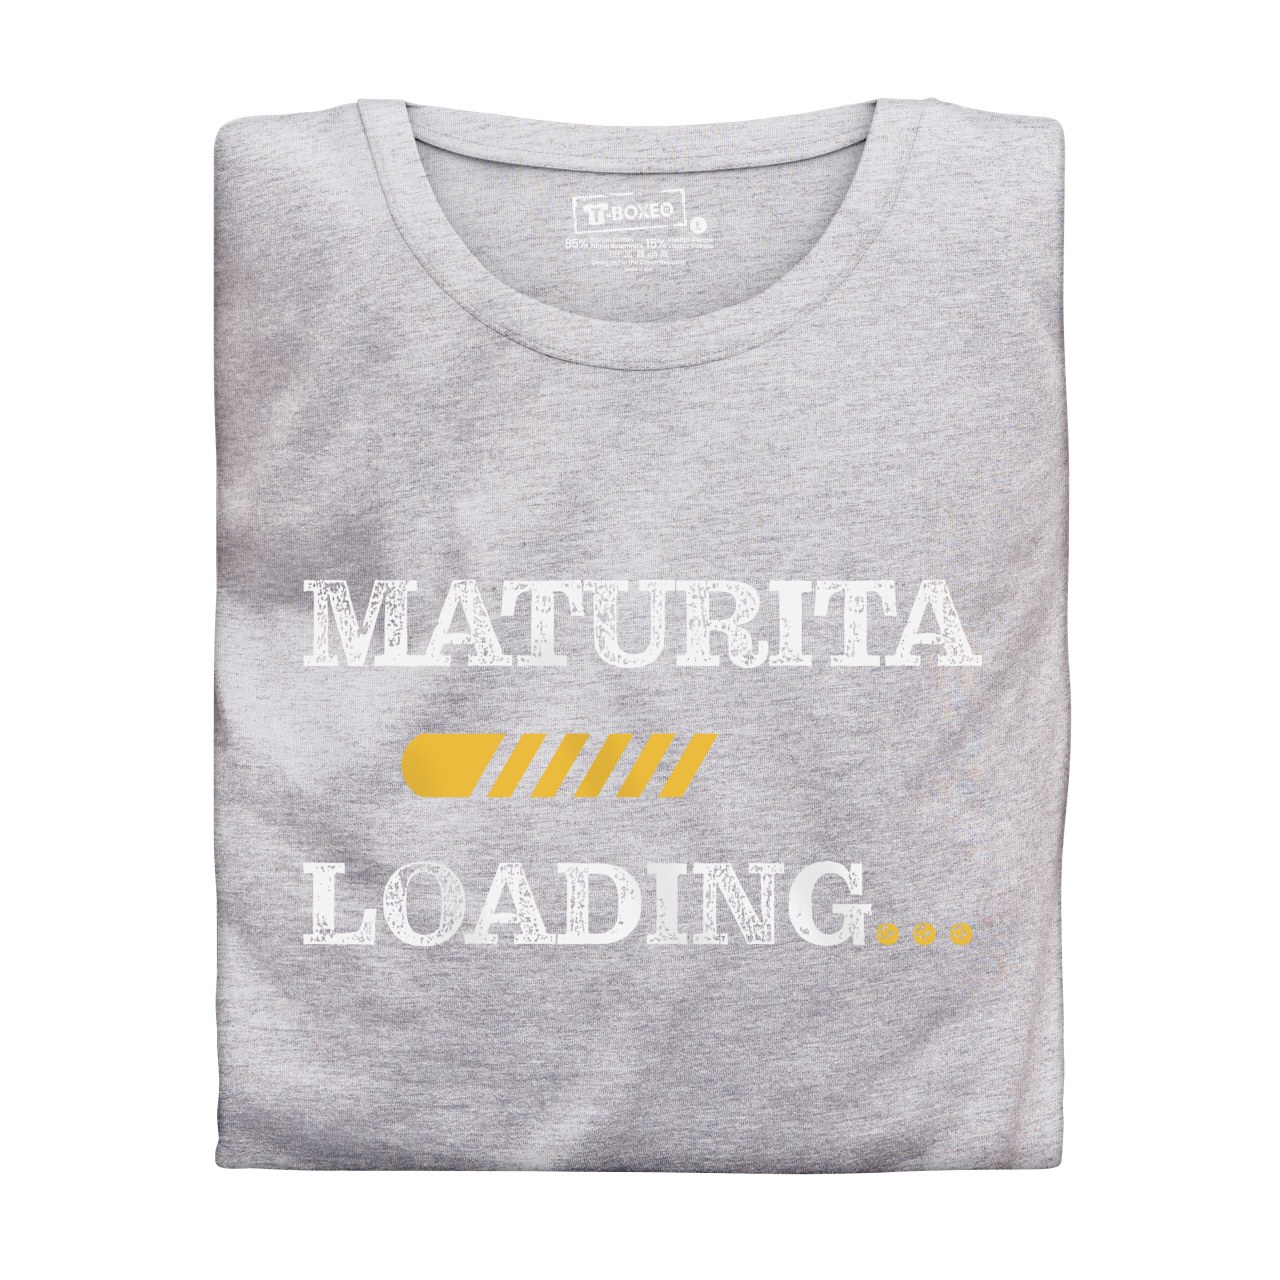 Pánské tričko s potiskem “Maturita loading”